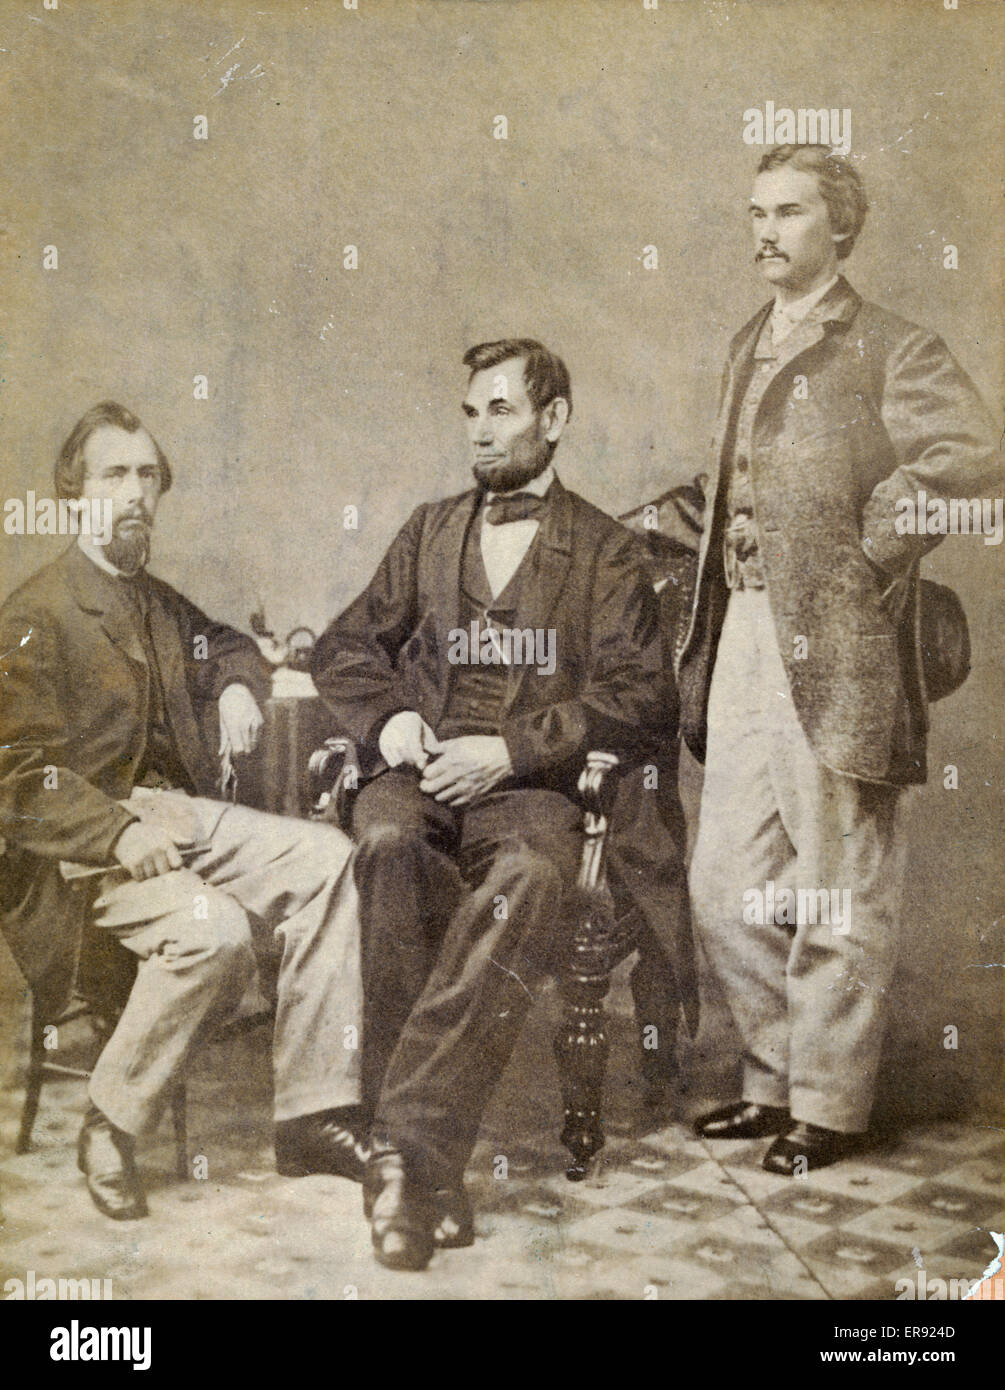 Lincoln &AMP ; ses secrétaires, Nicolay &AMP ; Hay. La photo montre le président Abraham Lincoln assis entre ses secrétaires particuliers John G. Nicolay et John Hay à une séance photo dans le studio d'Alexander Gardner à Washington, DC, le 8 novembre 1863. Sur ce da Banque D'Images